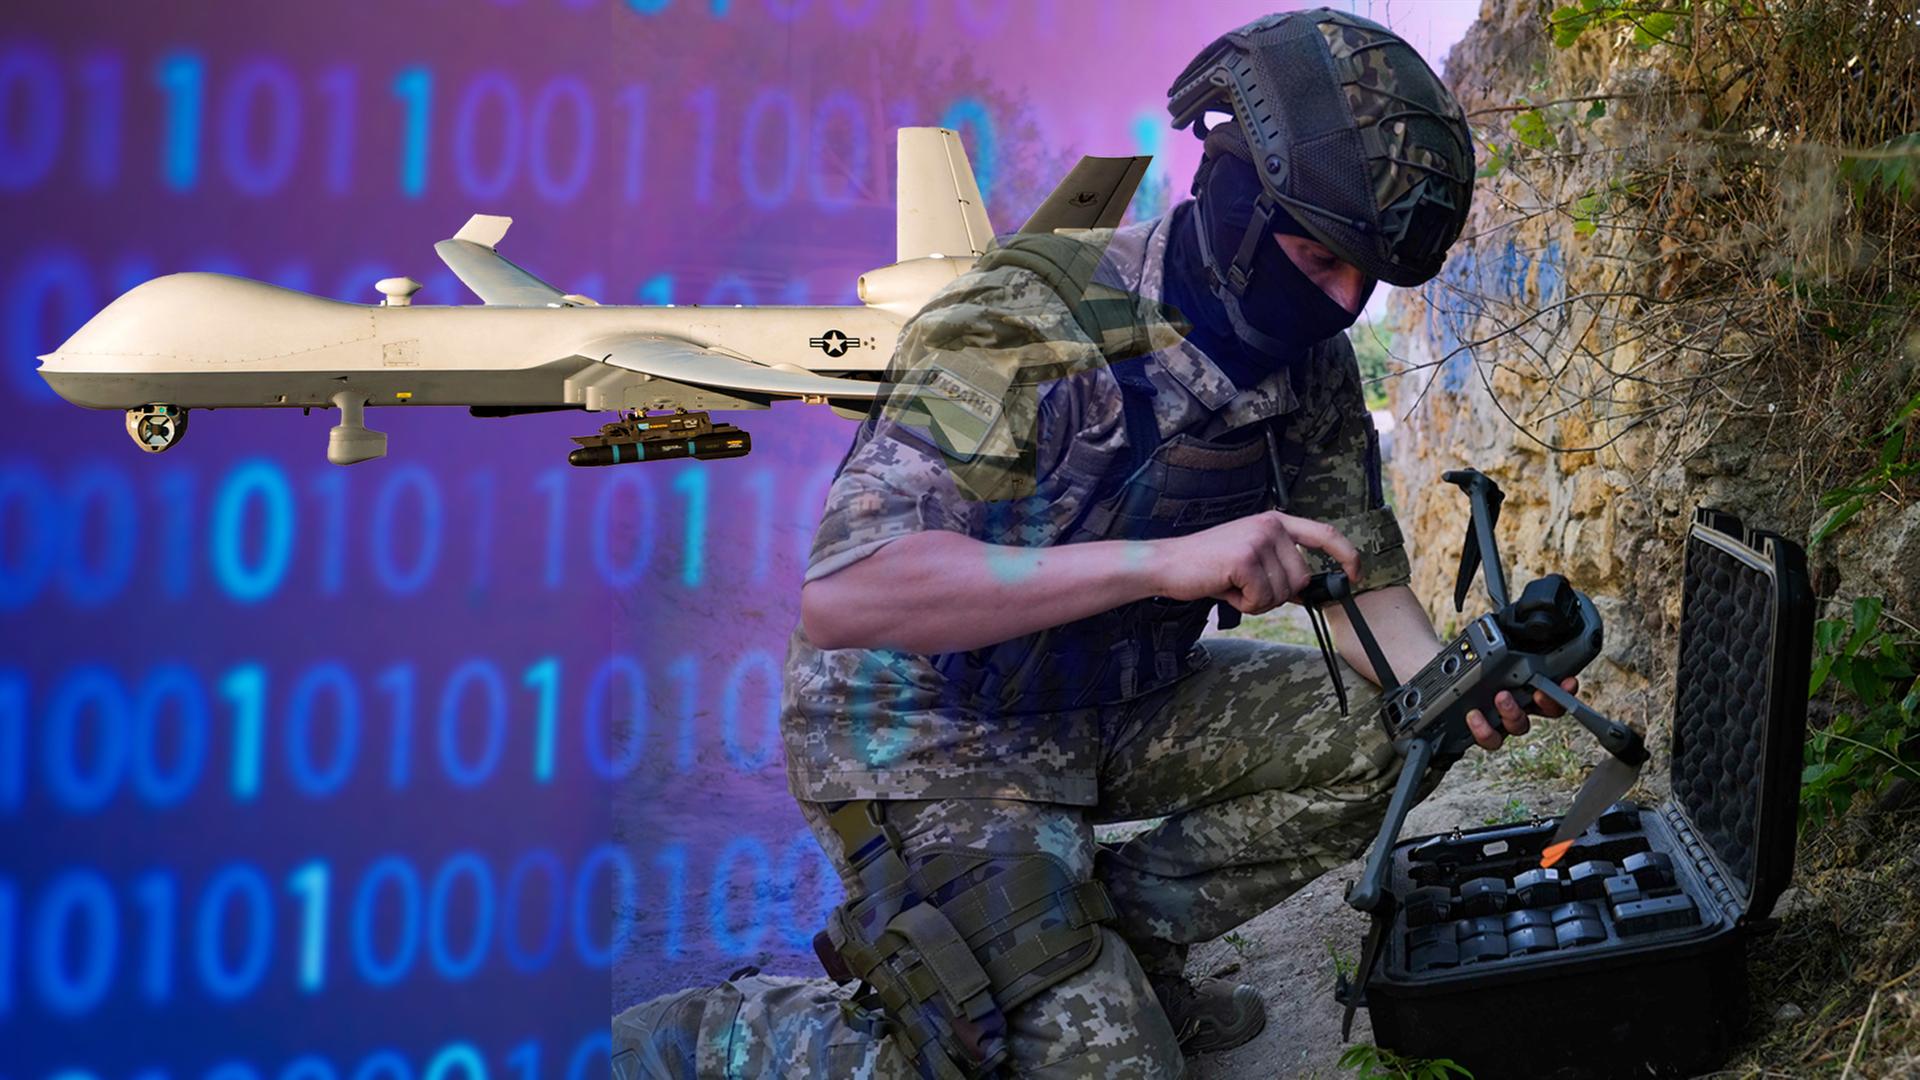 Zu sehen ist ein Soldat, der eine Box zur Steuerung von Drohnen bedient; im Hintergrund eine Drohne und ein Binär-Code.